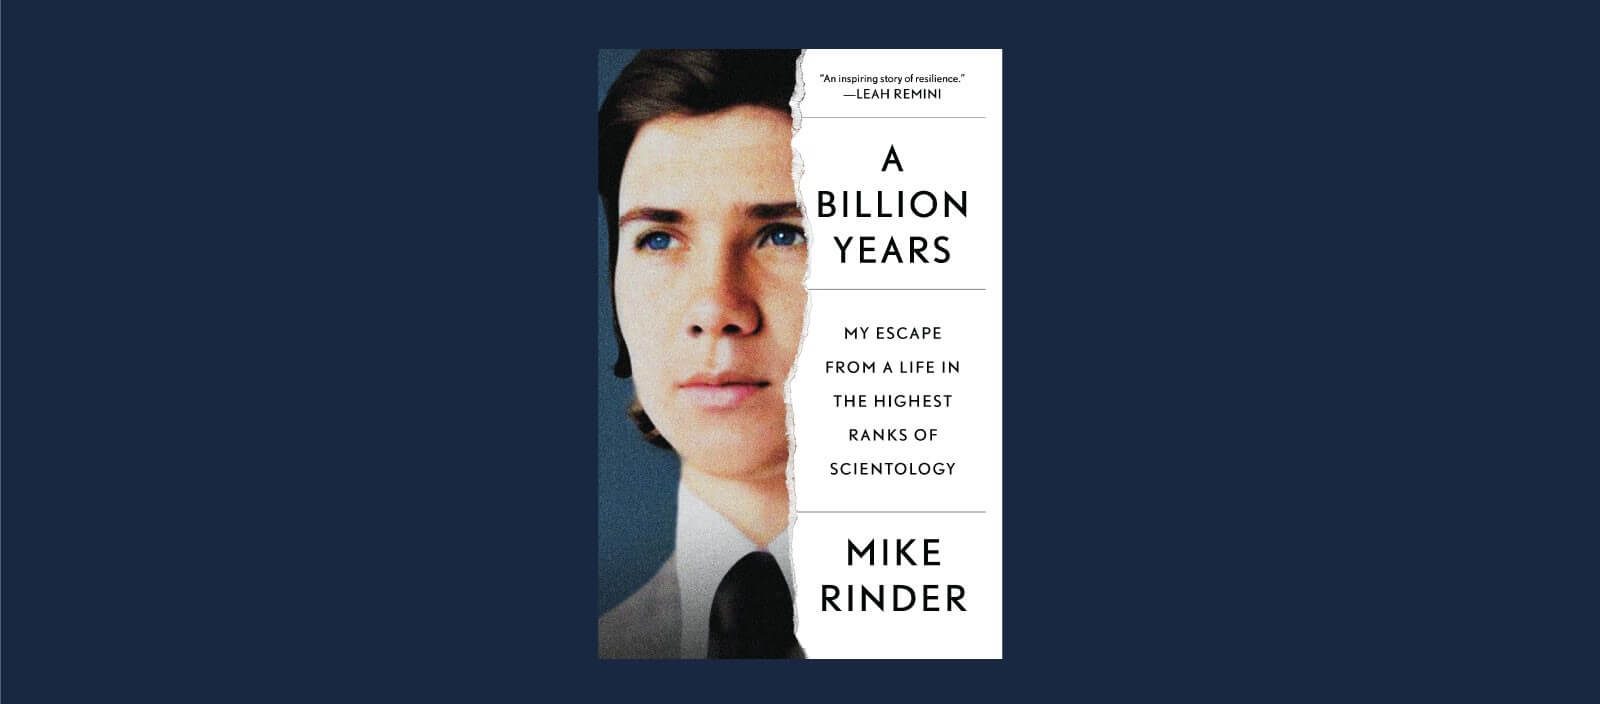 Mike Rinder's memoir